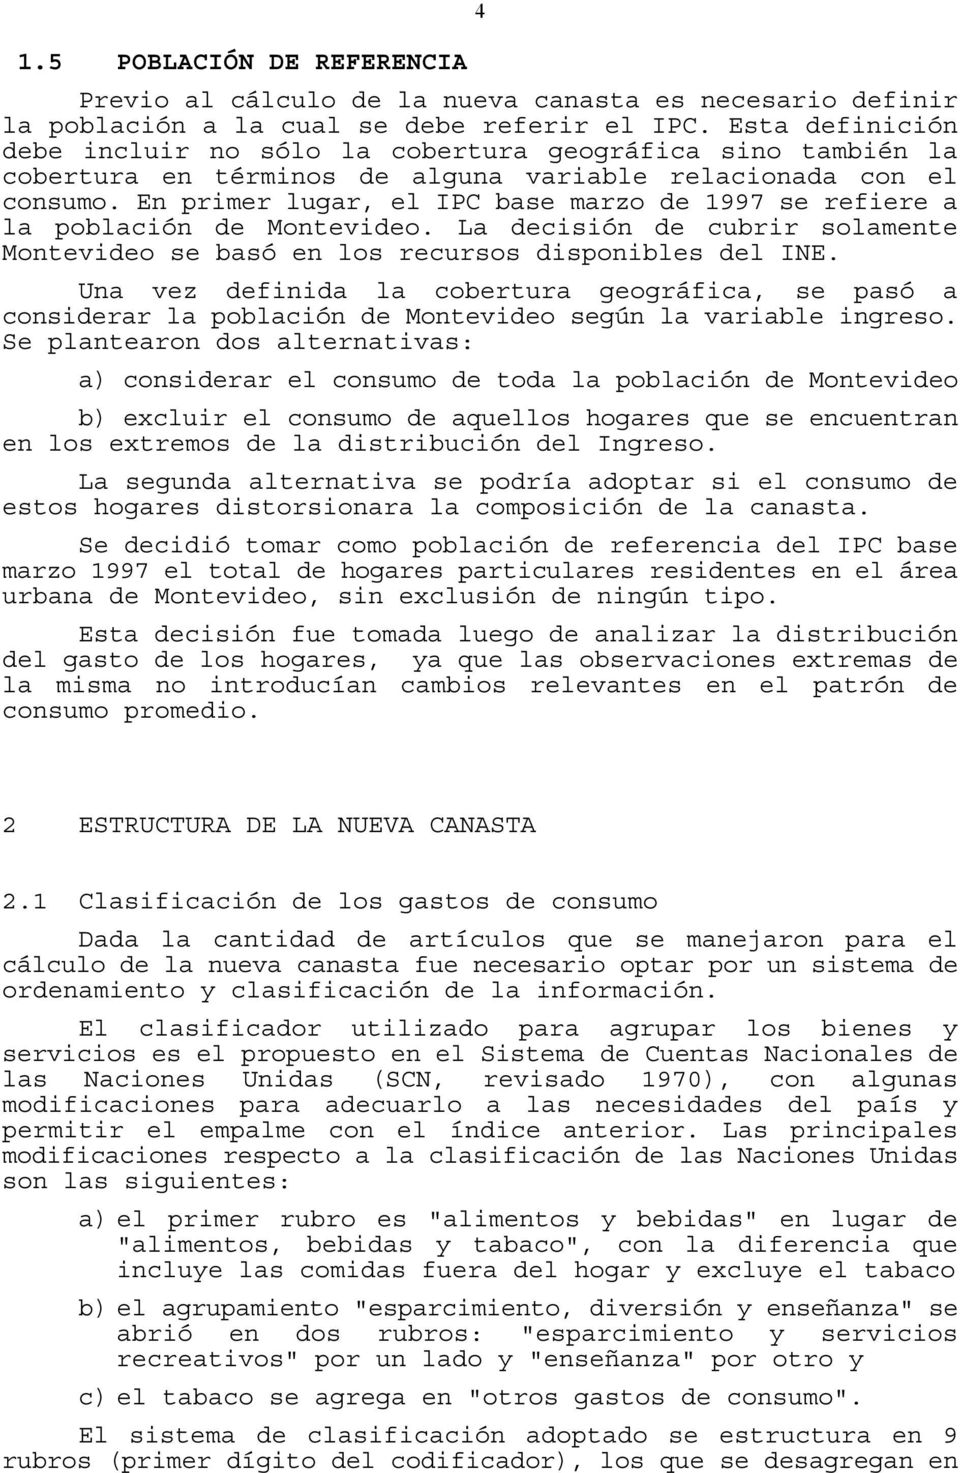 En primer lugar, el IPC base marzo de 1997 se refiere a la población de Monevideo. La decisión de cubrir solamene Monevideo se basó en los recursos disponibles del INE.